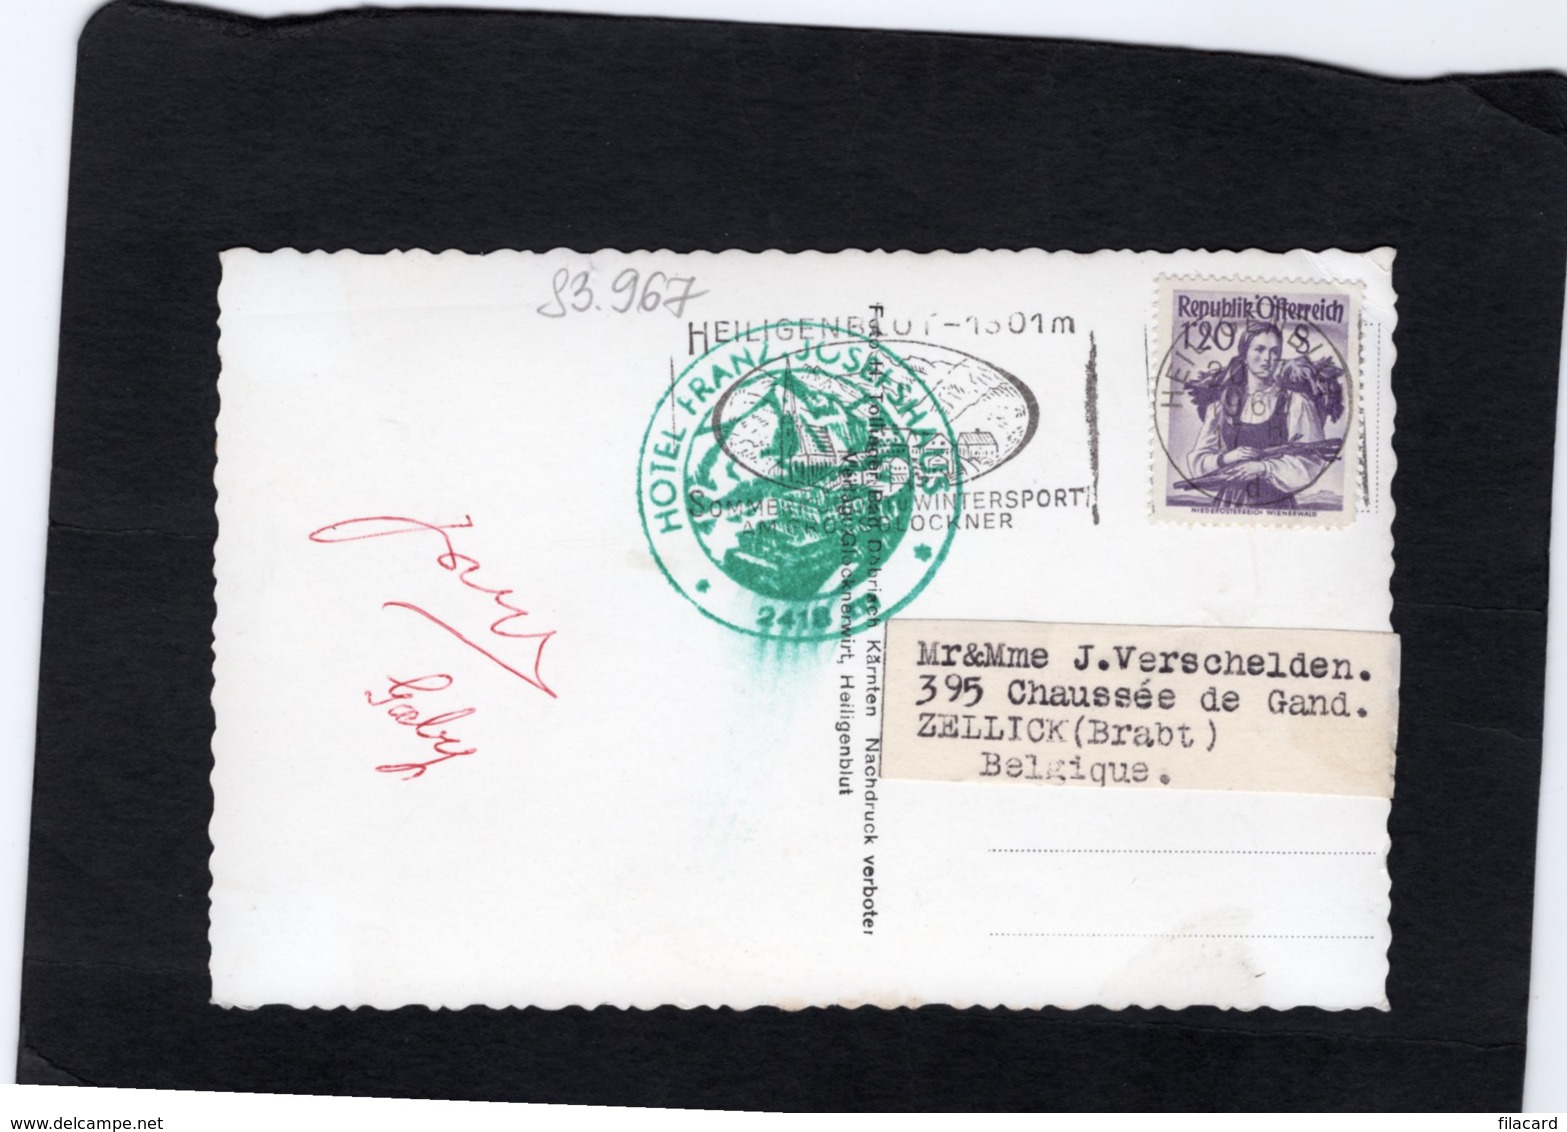 83967    Austria,   Kaiser Franz  Josef - Haus Mit Grosslockner,  Johannisberg Und Pasterzengletscher,  VG  1962 - Kals